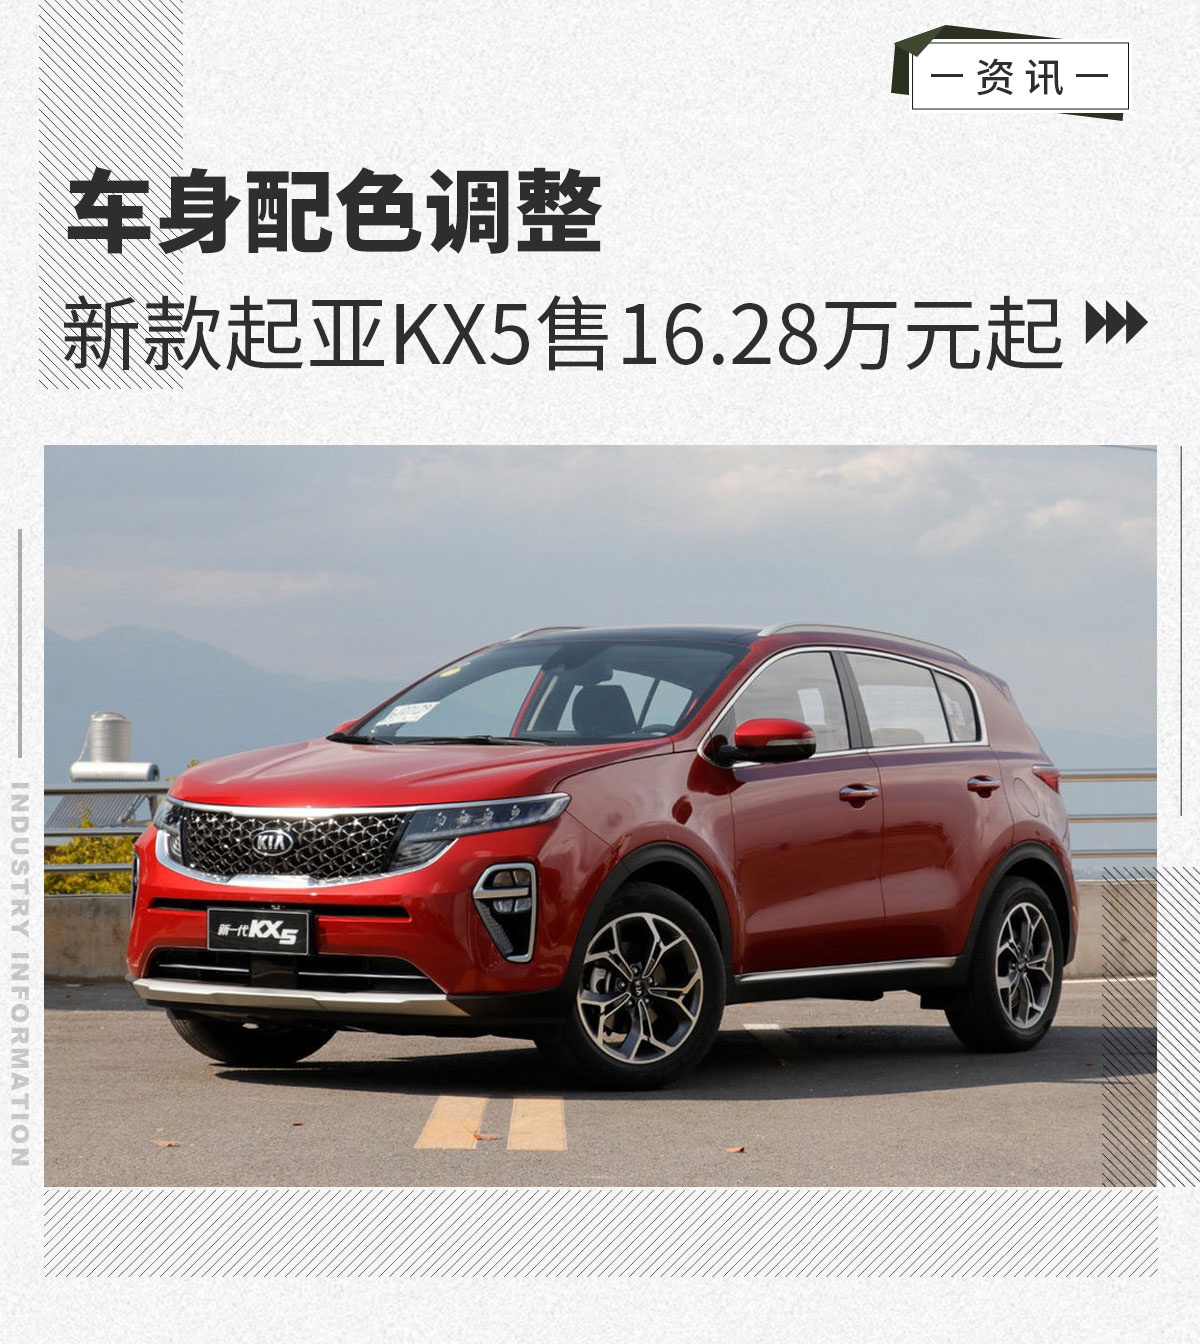 新款起亚KX5售价16.28万元起 车身配色调整